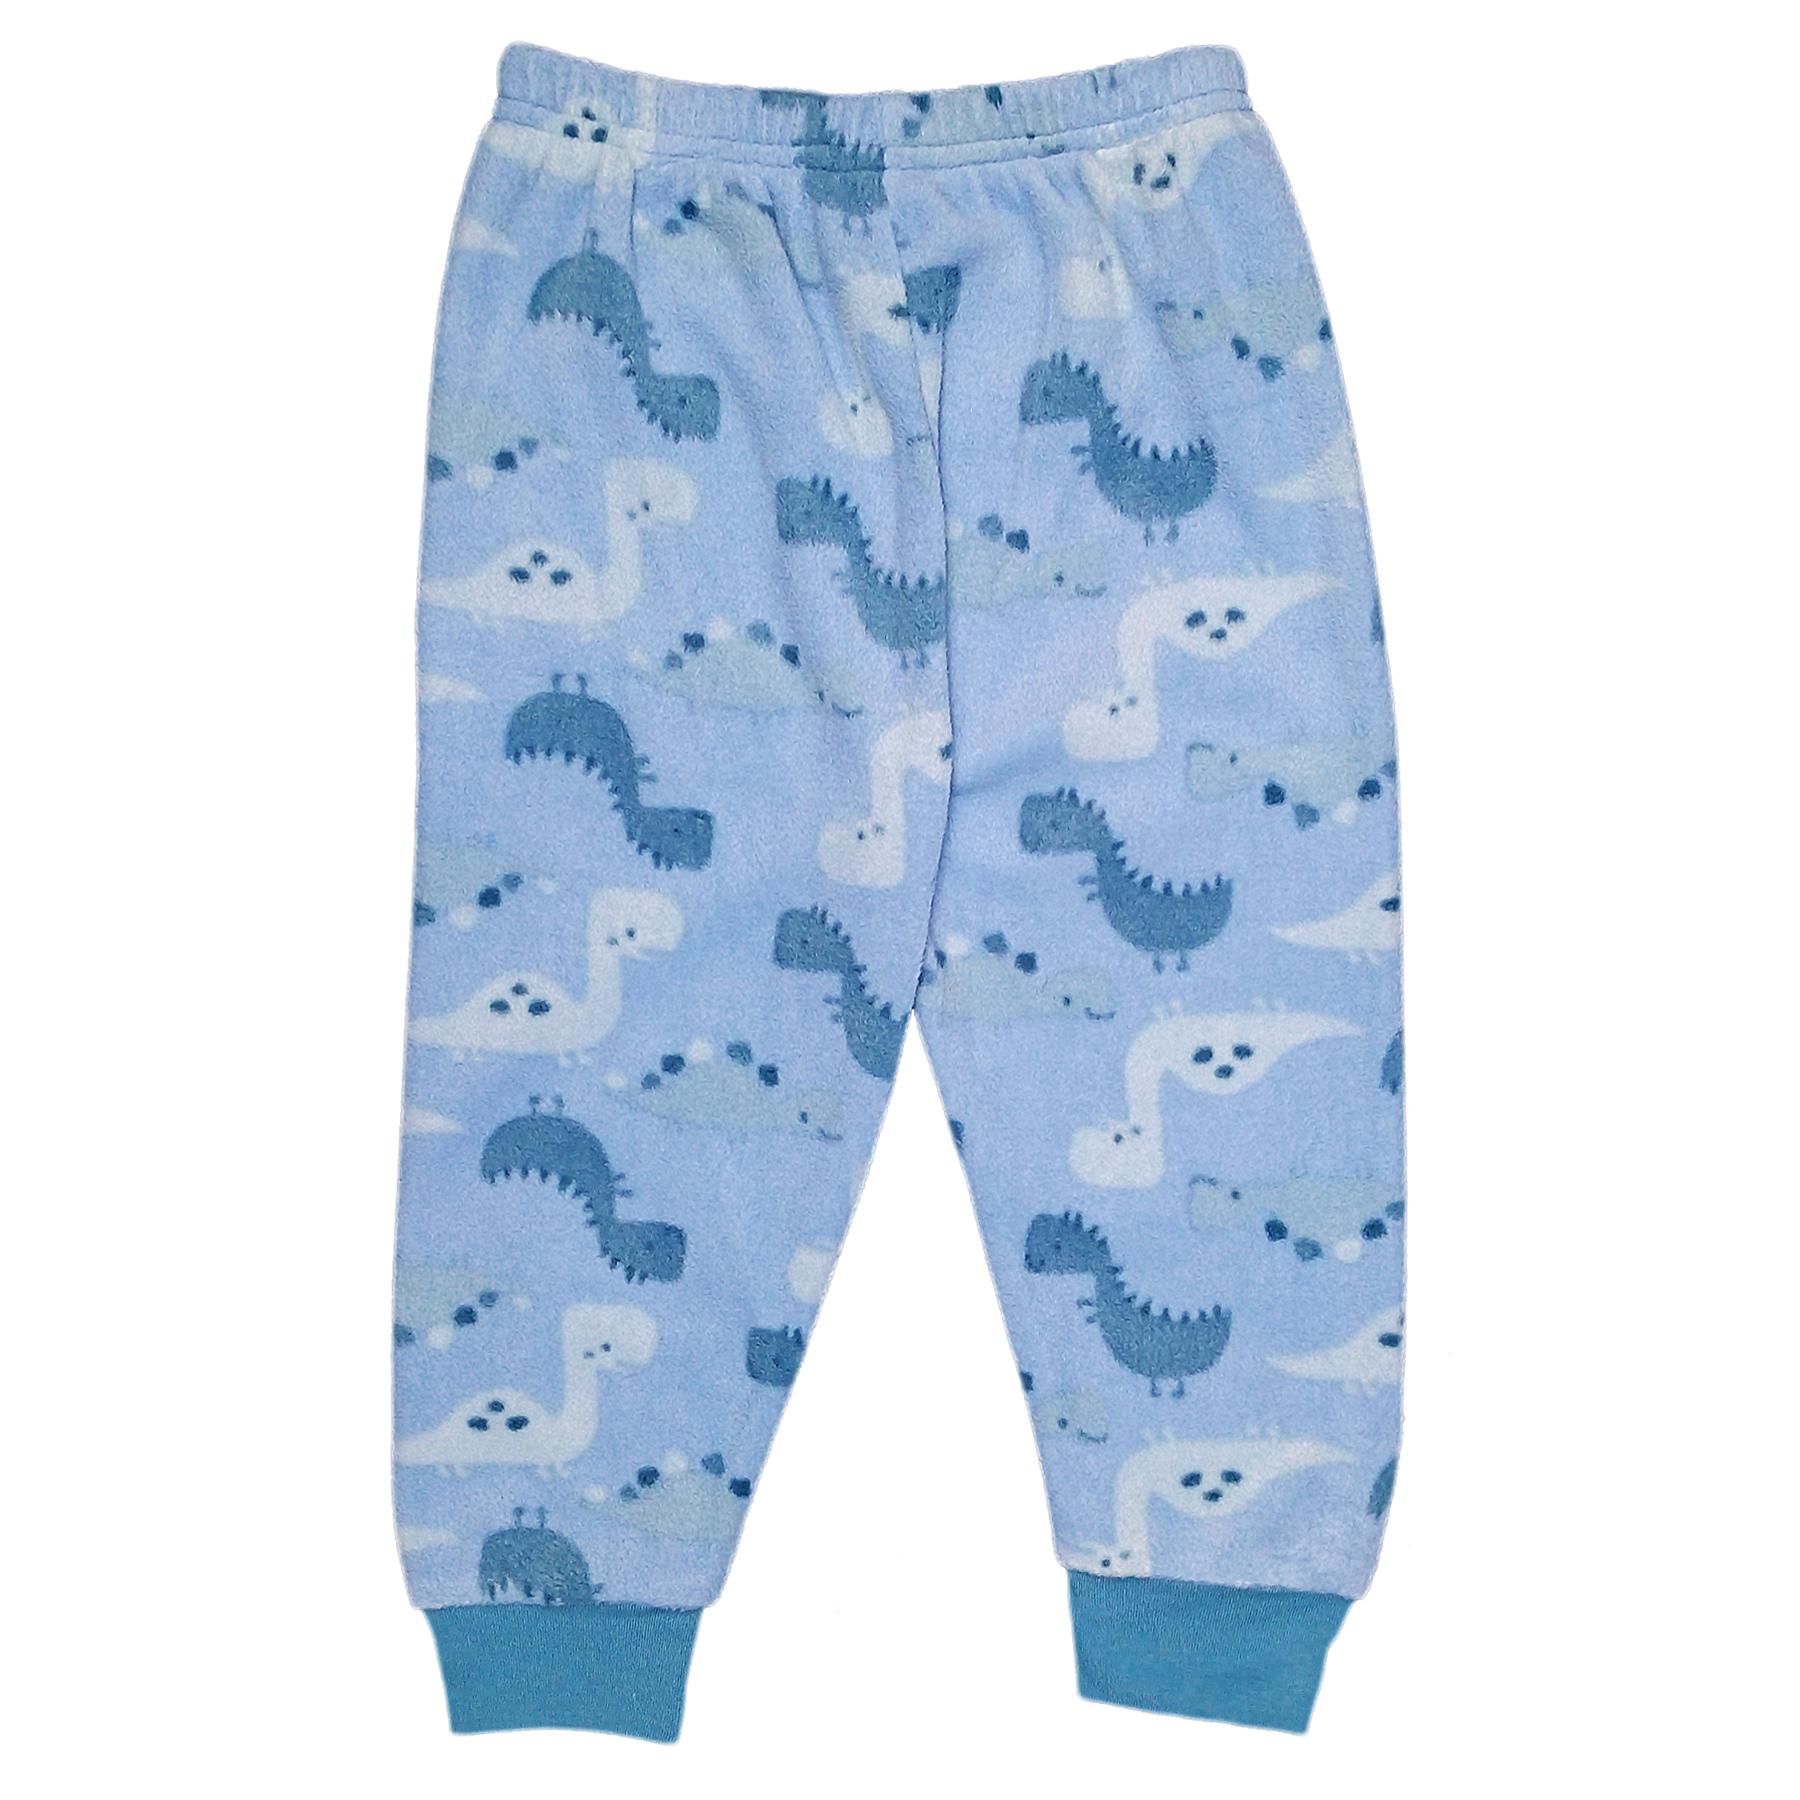 Jam Jam Blue Dinosaur Fleece Pyjama Bottoms